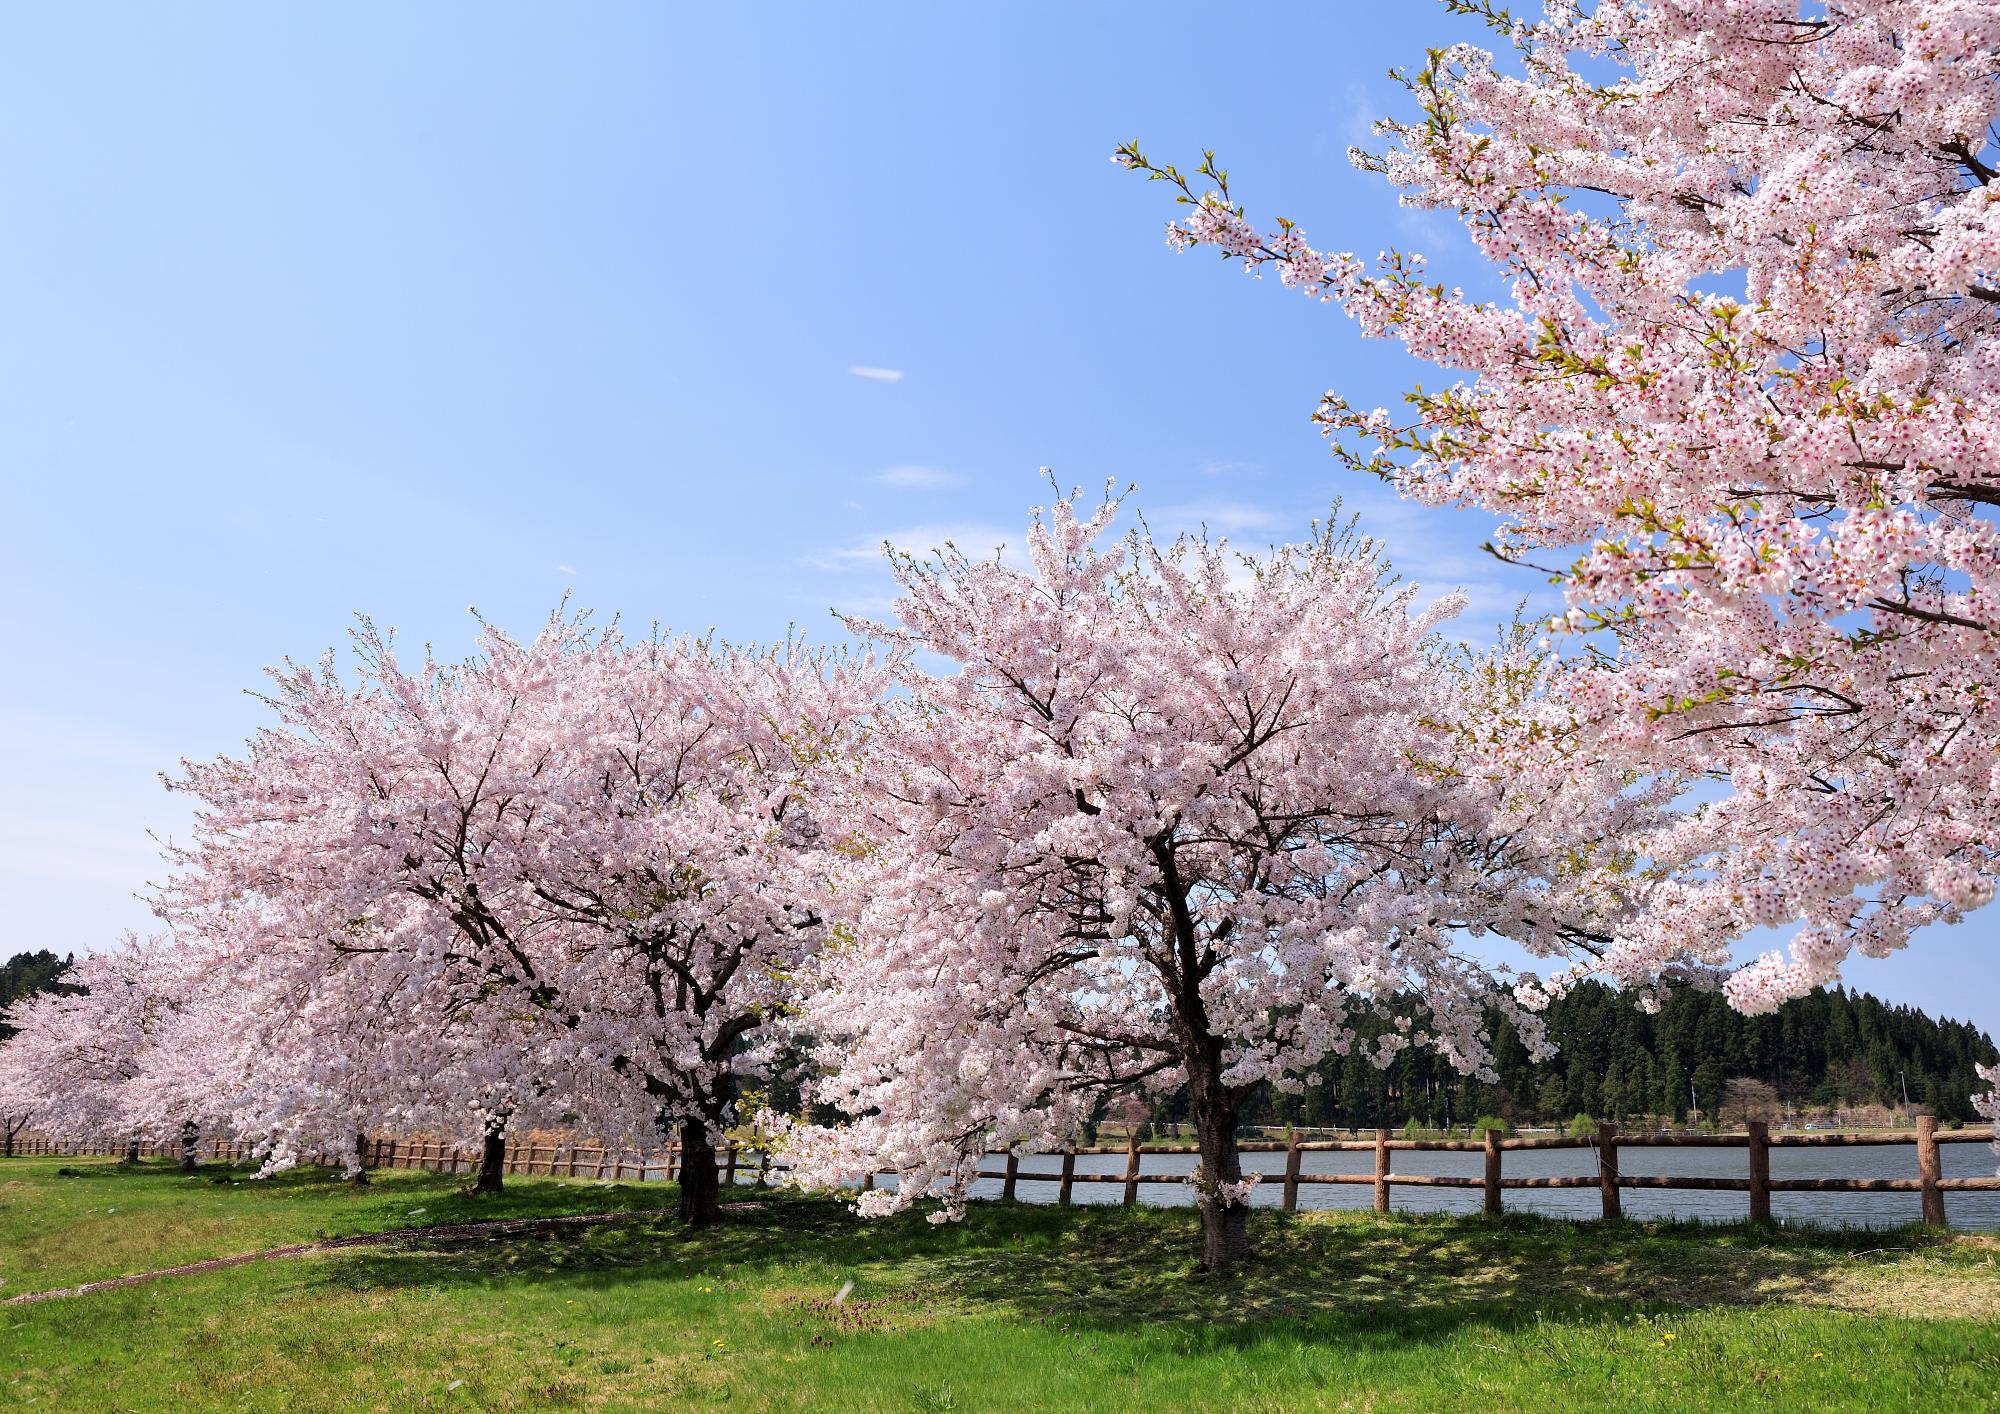 春の惣三郎沼公園の遊歩道沿いにある満開の桜の様子